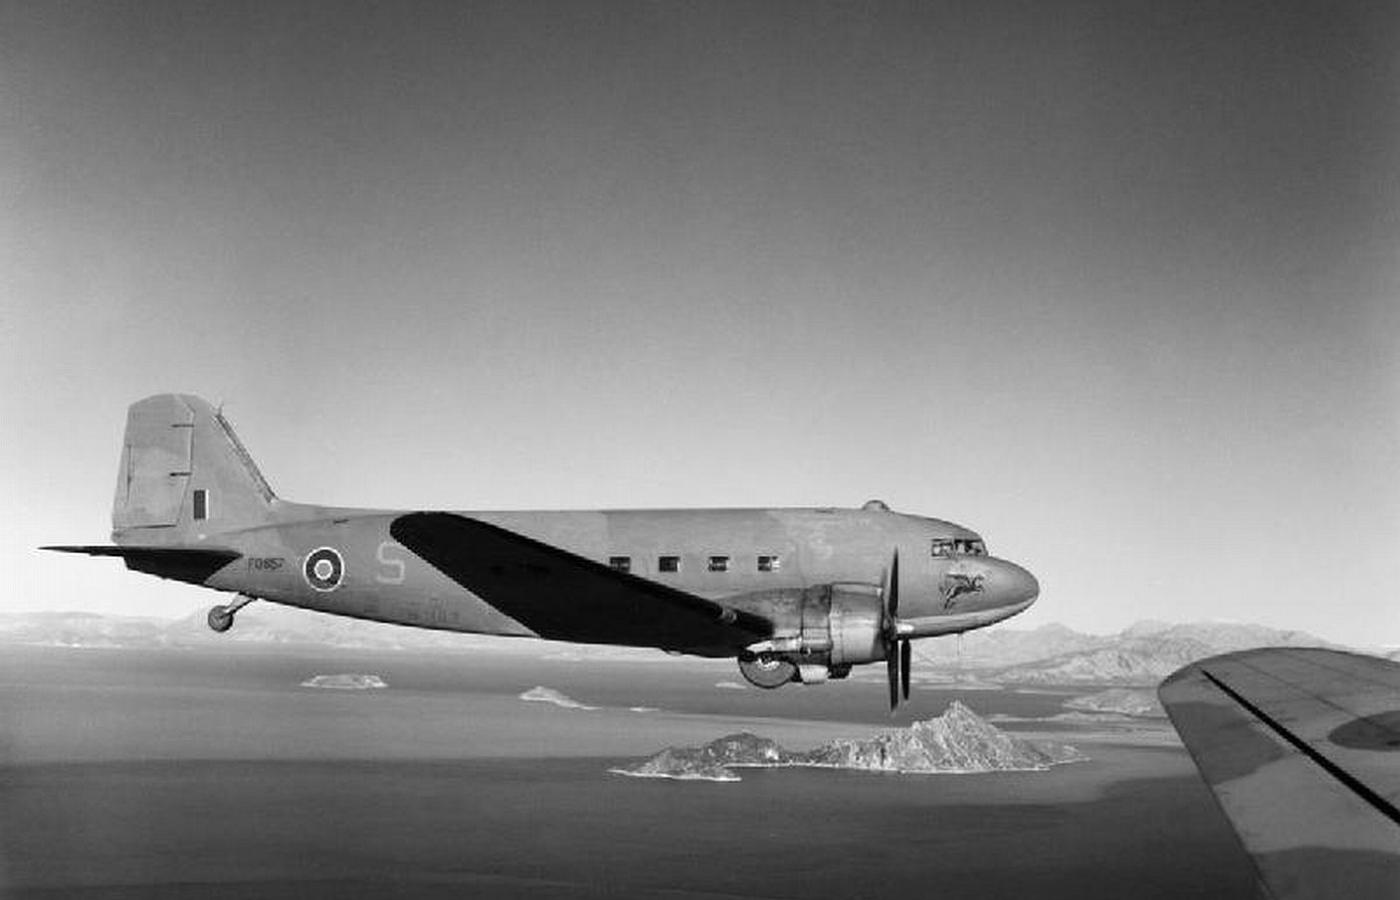 Samolot Dakota KG-477 V, należący do 267 Dywizjonu RAF.